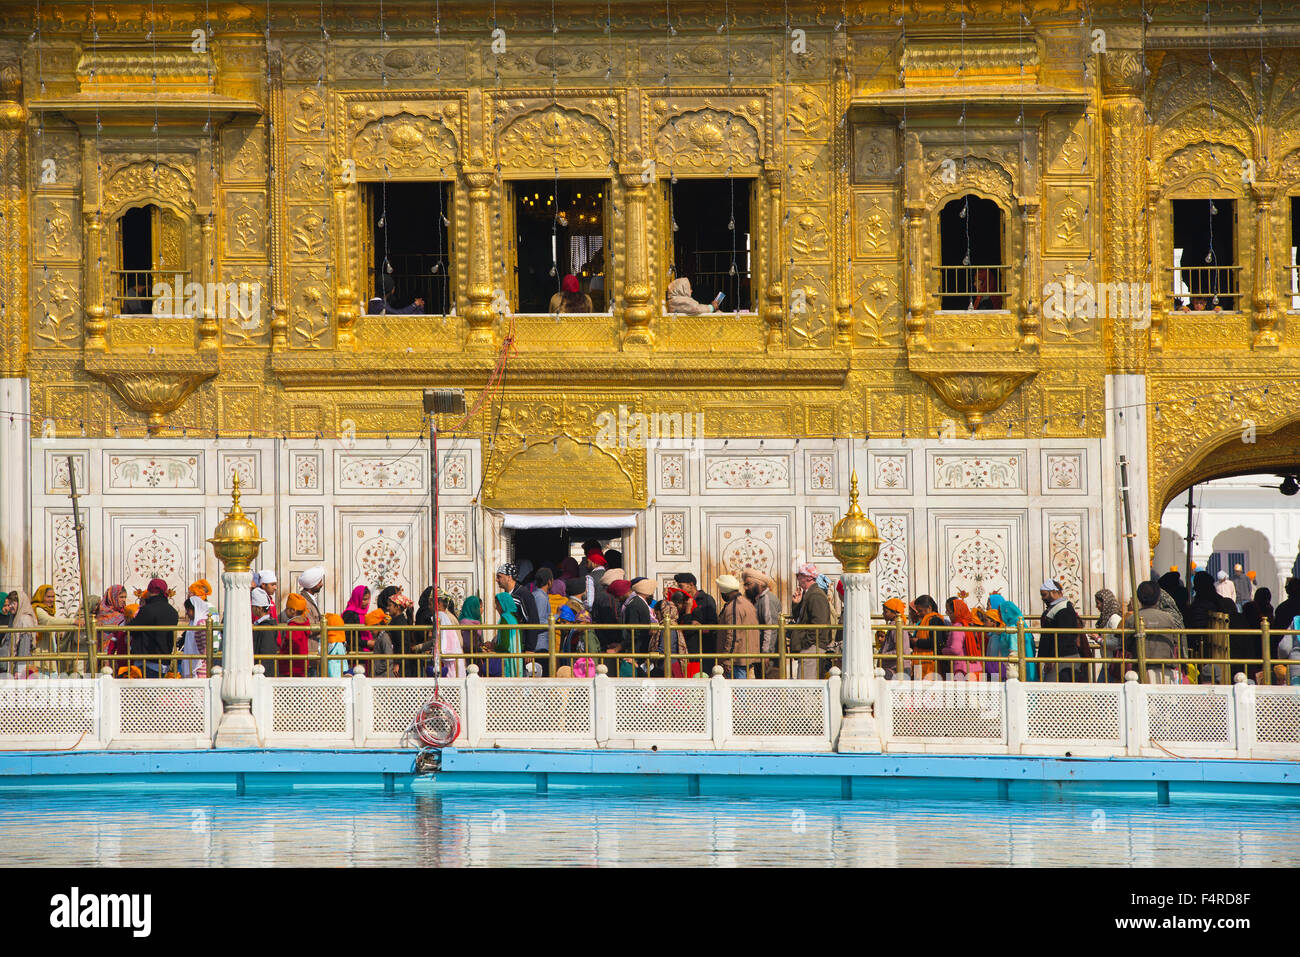 Asien, Indien, Punjab, Amritsar, Goldener Tempel, Religion, Sikh, Schrein, heilig, Pilger, Menschenmenge, Reisen, exotisch, Wahrzeichen, Gebäude Stockfoto